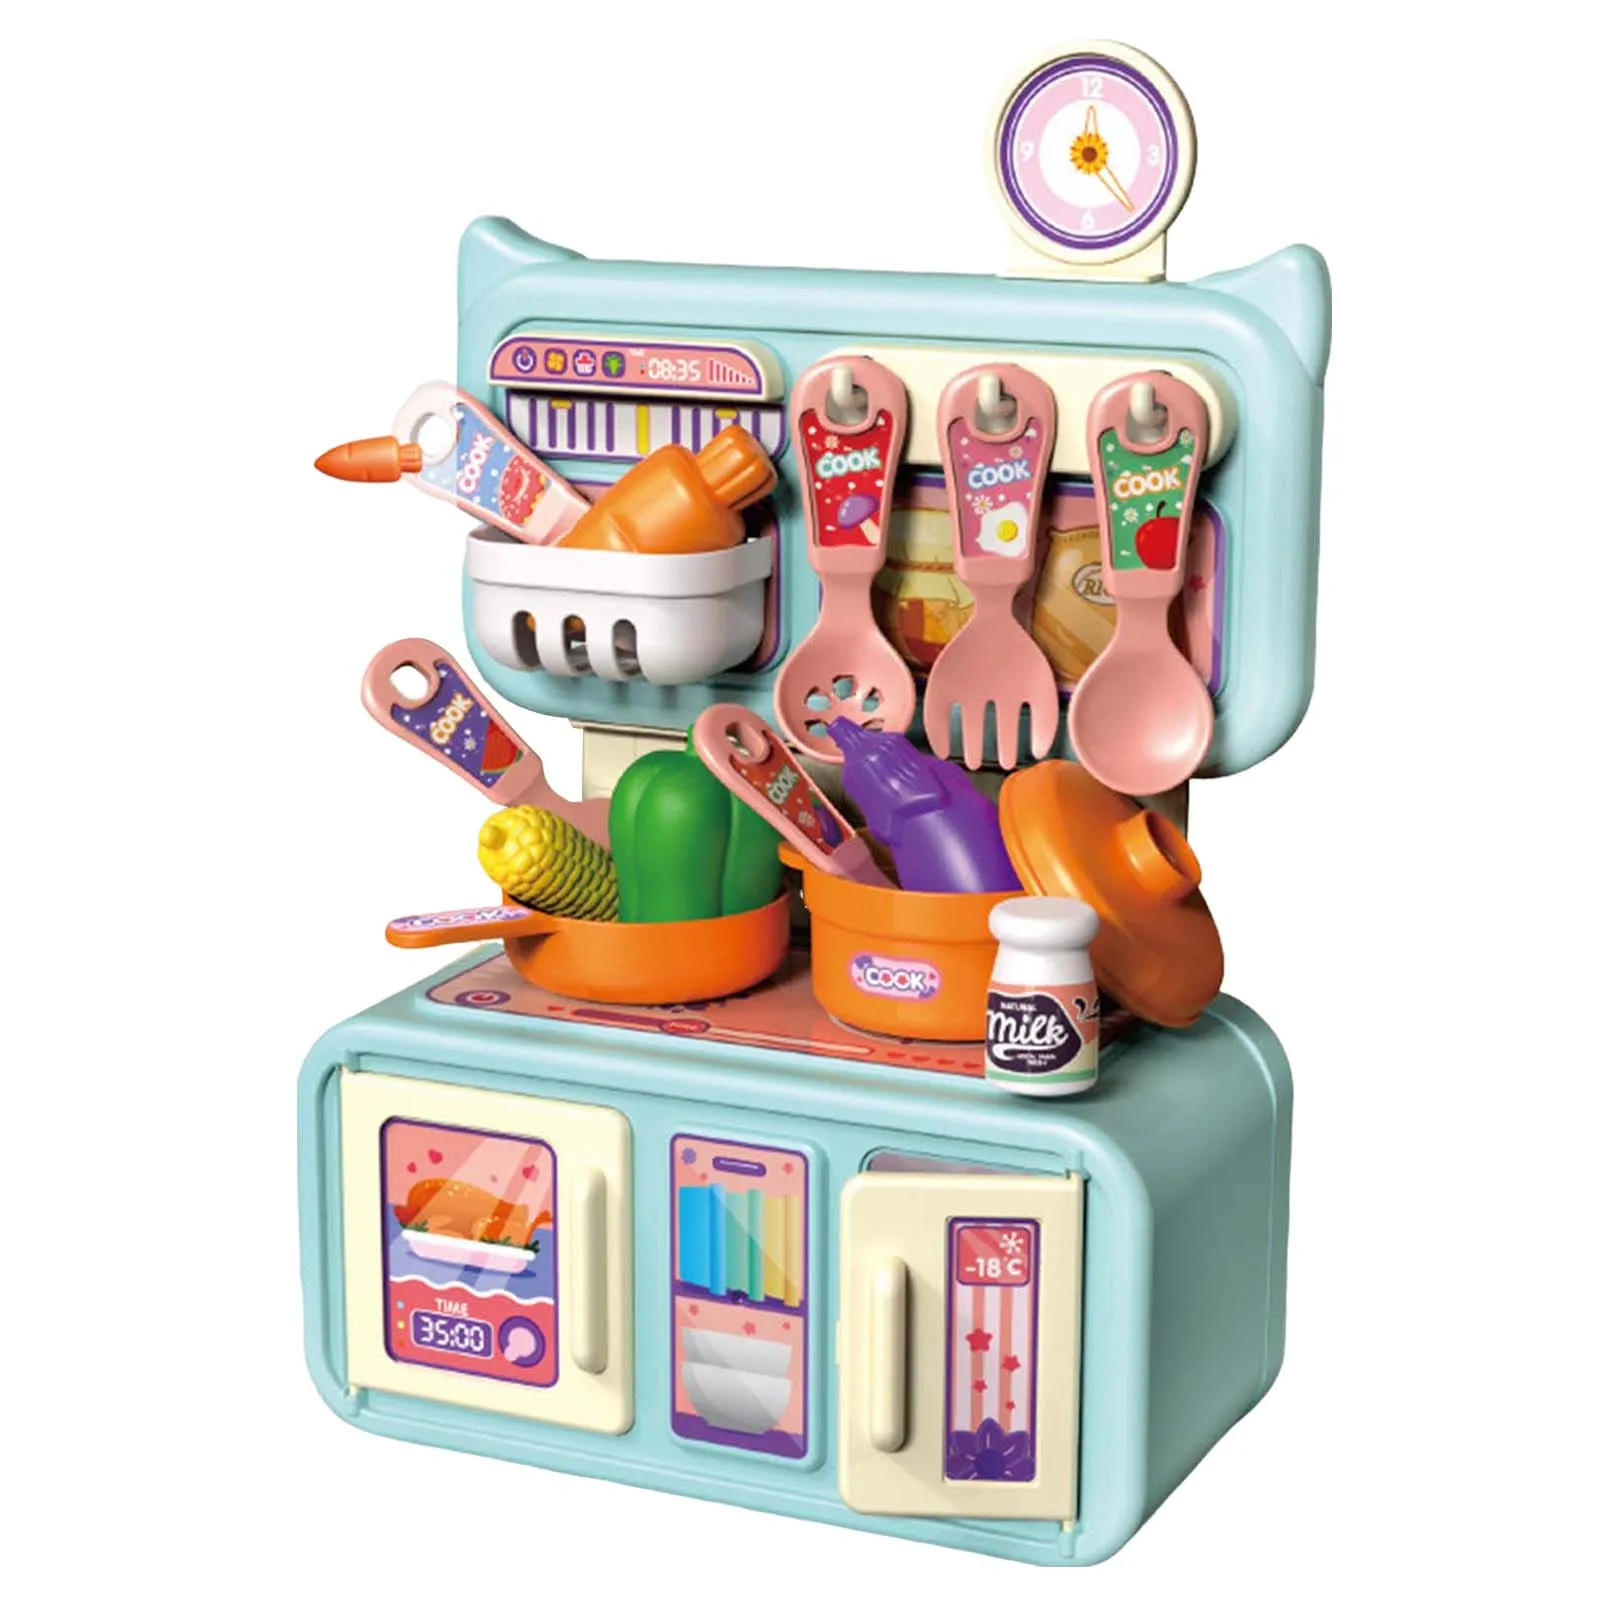 

Детские игрушки для ролевых игр, Набор портативных кухонных игрушек, ролевые игры, Кухонные Игрушки для приготовления пищи для детей, набор интерактивных игрушек